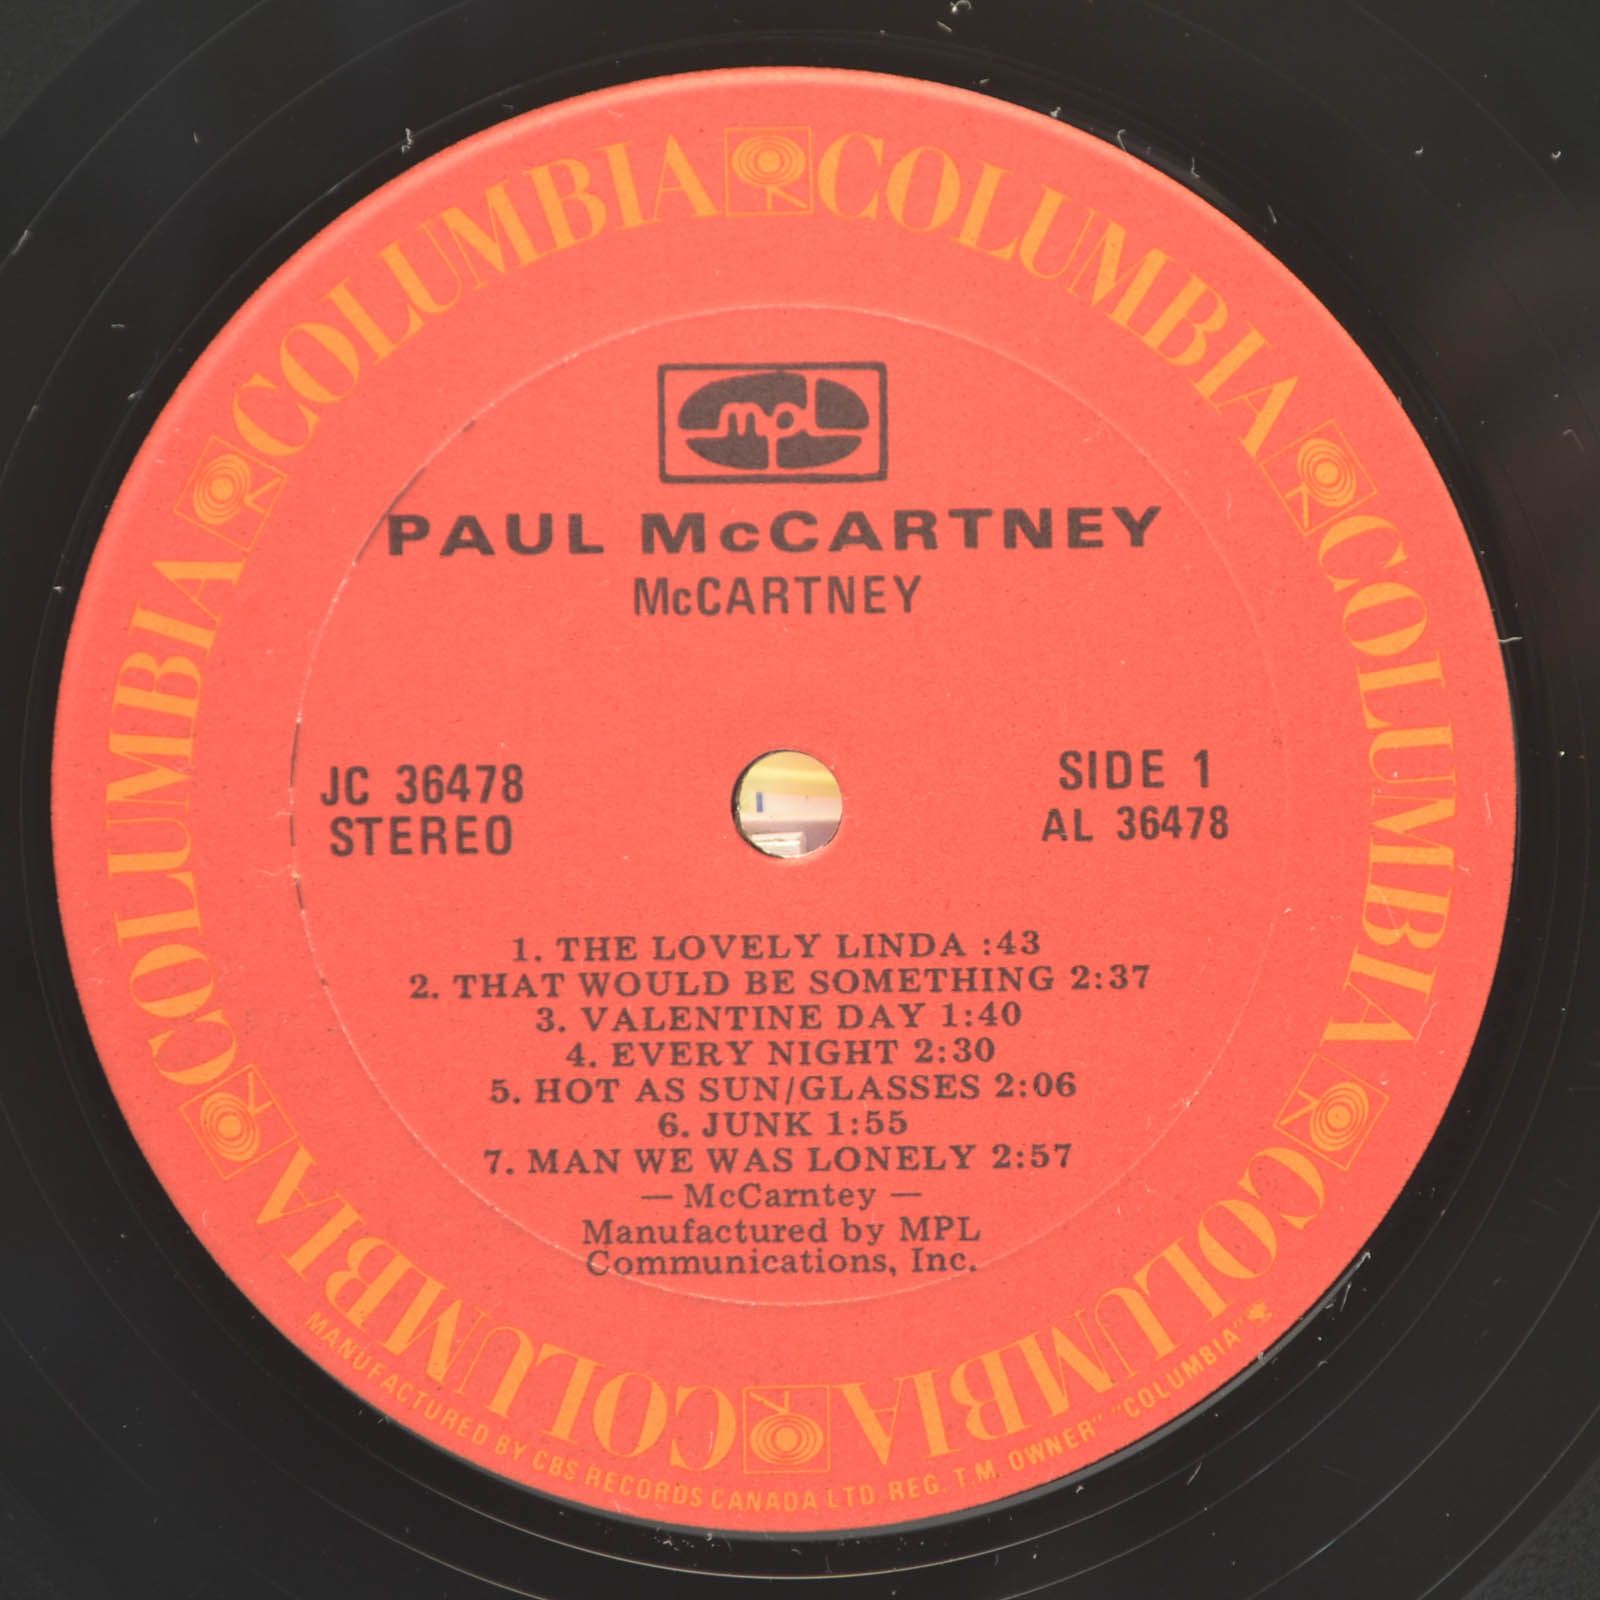 McCartney — McCartney, 1970